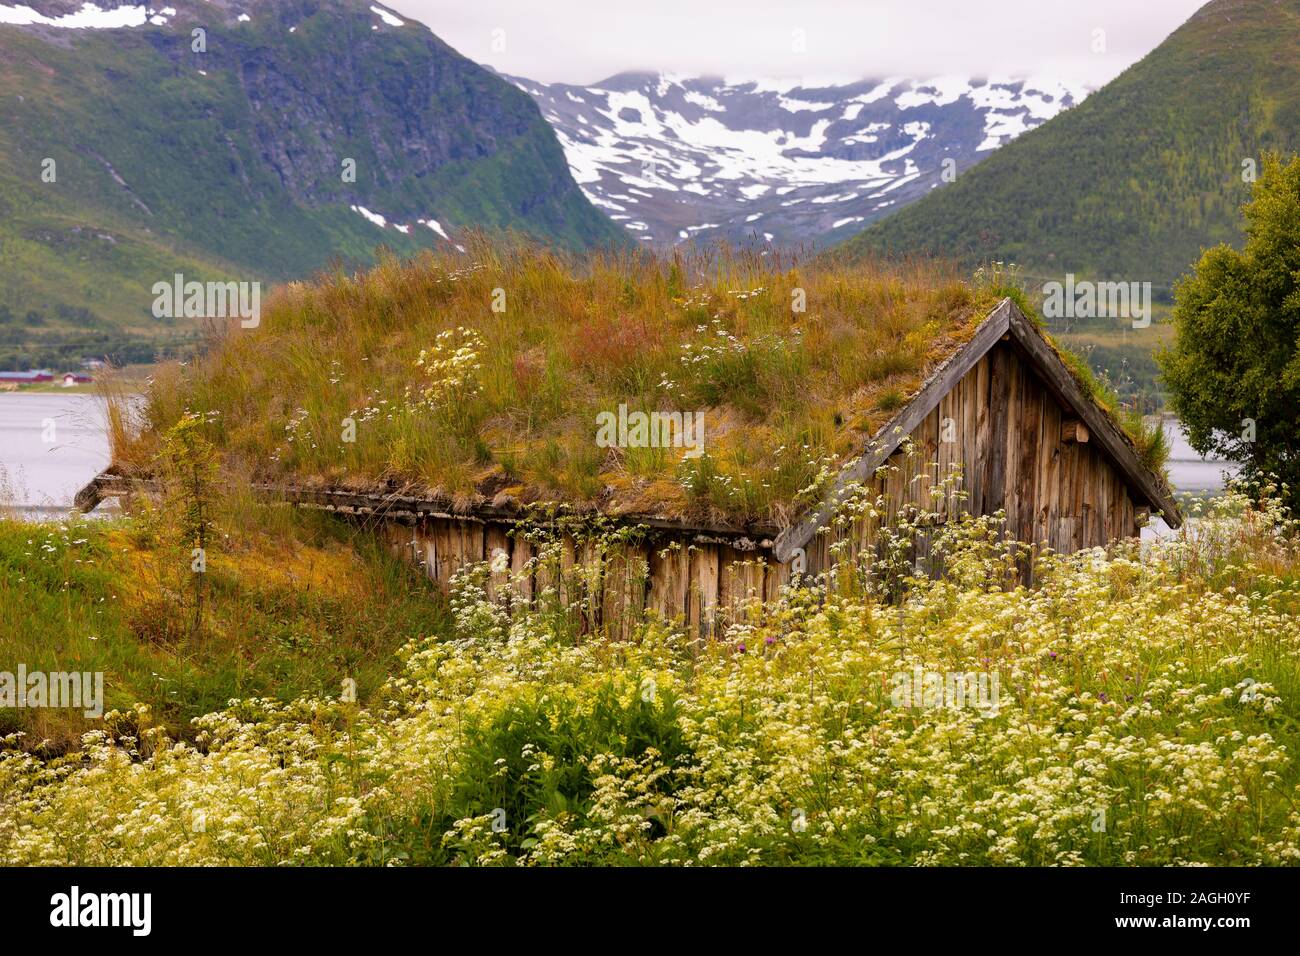 STRAUMSBUKTA, INSEL KVALØYA, Troms County, NORWEGEN - Historisches Museum Dorf Straumen Gård mit Rasen Dach Gebäude. Sod Dach ist traditionell. Stockfoto